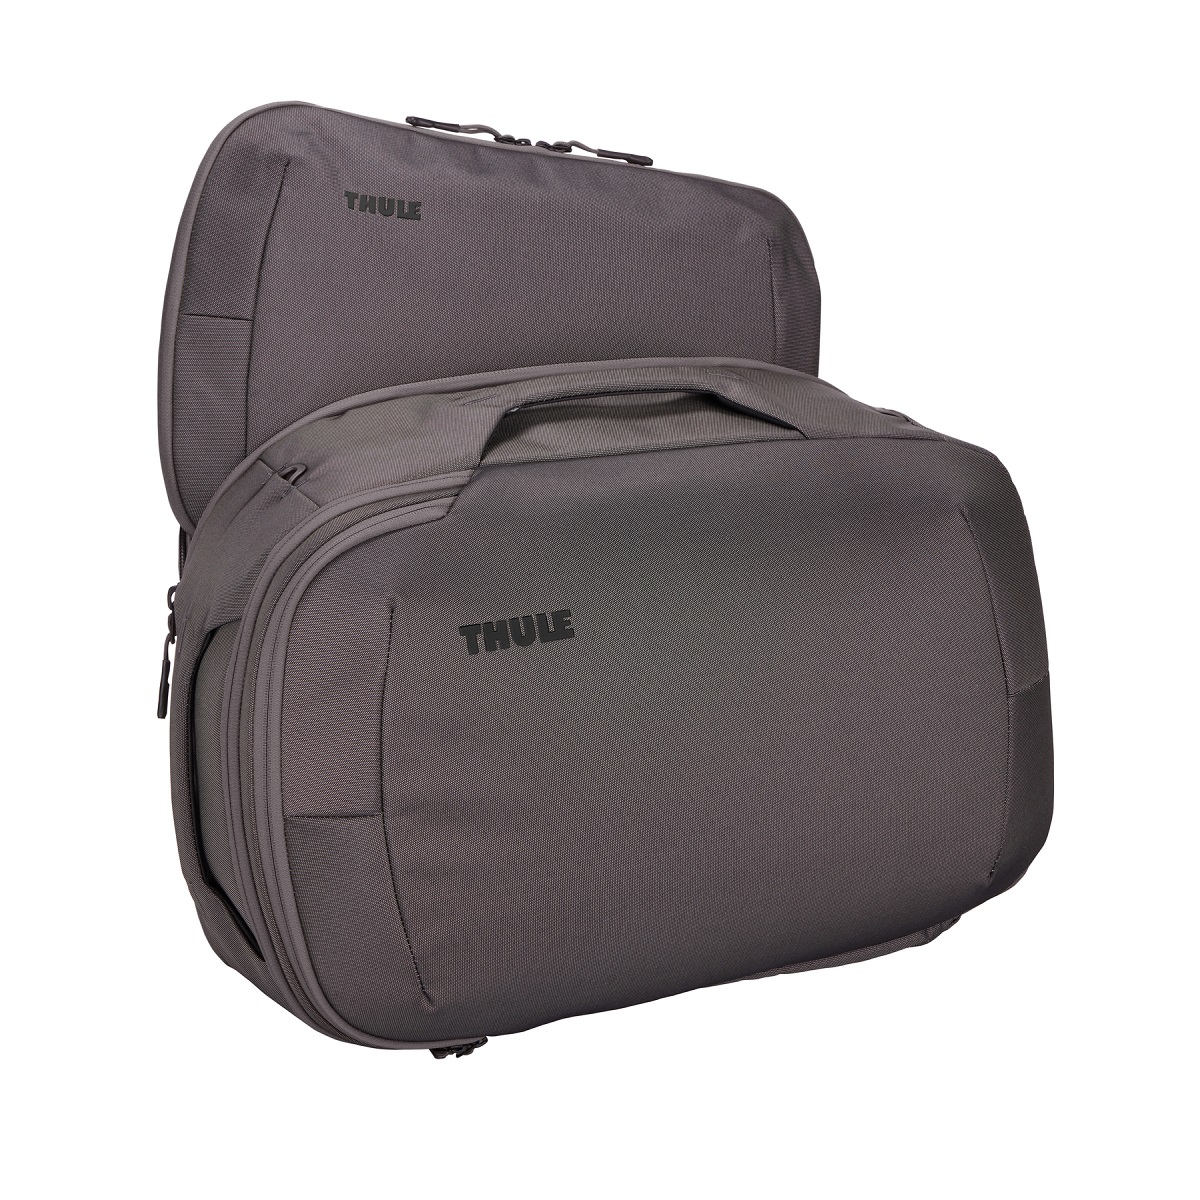 Thule Subterra 2 promjenjiva torba 40L usklađena sa standardima za unos ručne prtljage u zrakoplov - smeđa